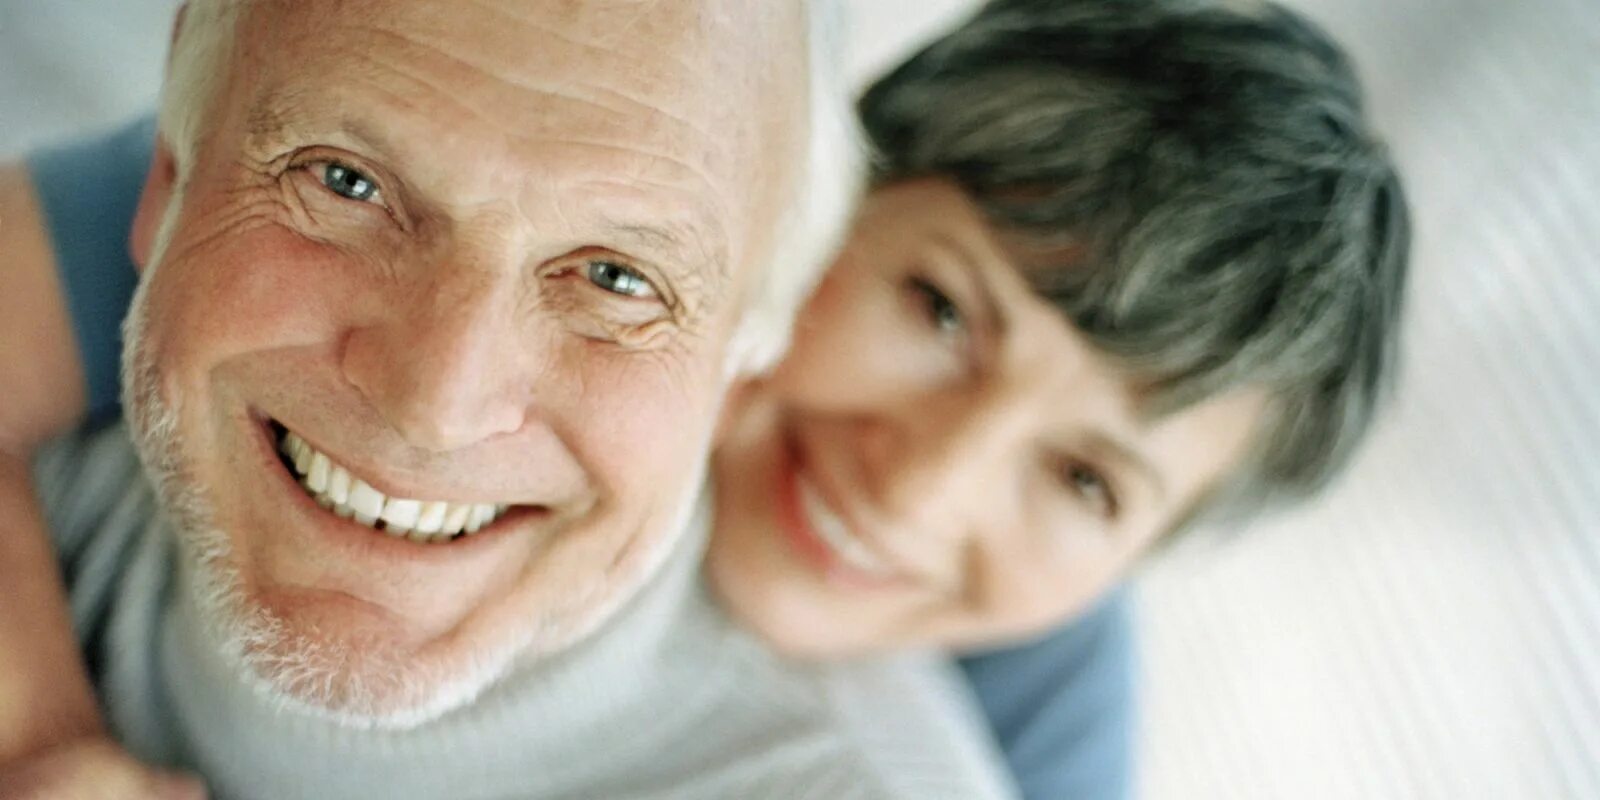 Протез пенсионеру. Улыбка пожилой. Пожилые люди улыбаются. Улыбка пожилого человека. Улыбки пожилых людей.